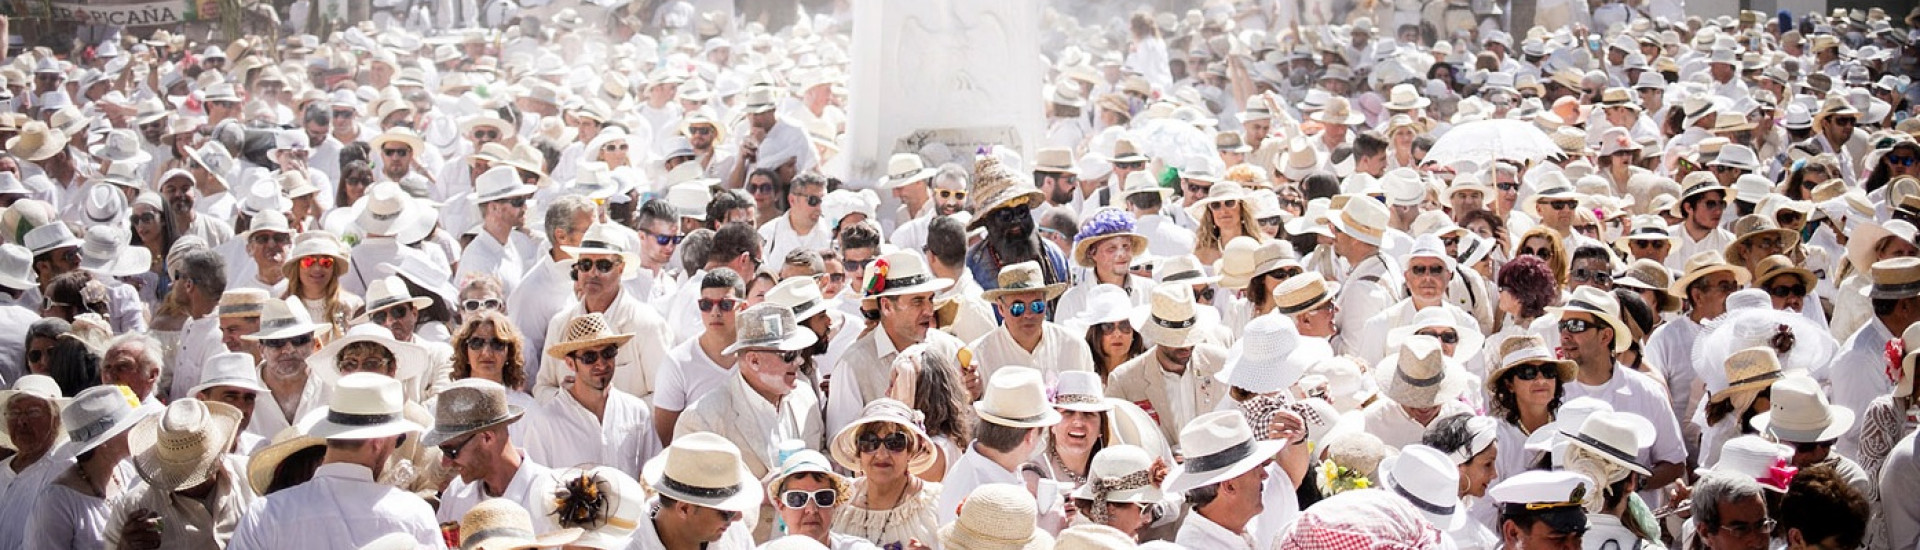 Traditionele en meest populaire festiviteiten op de Canarische Eilanden.